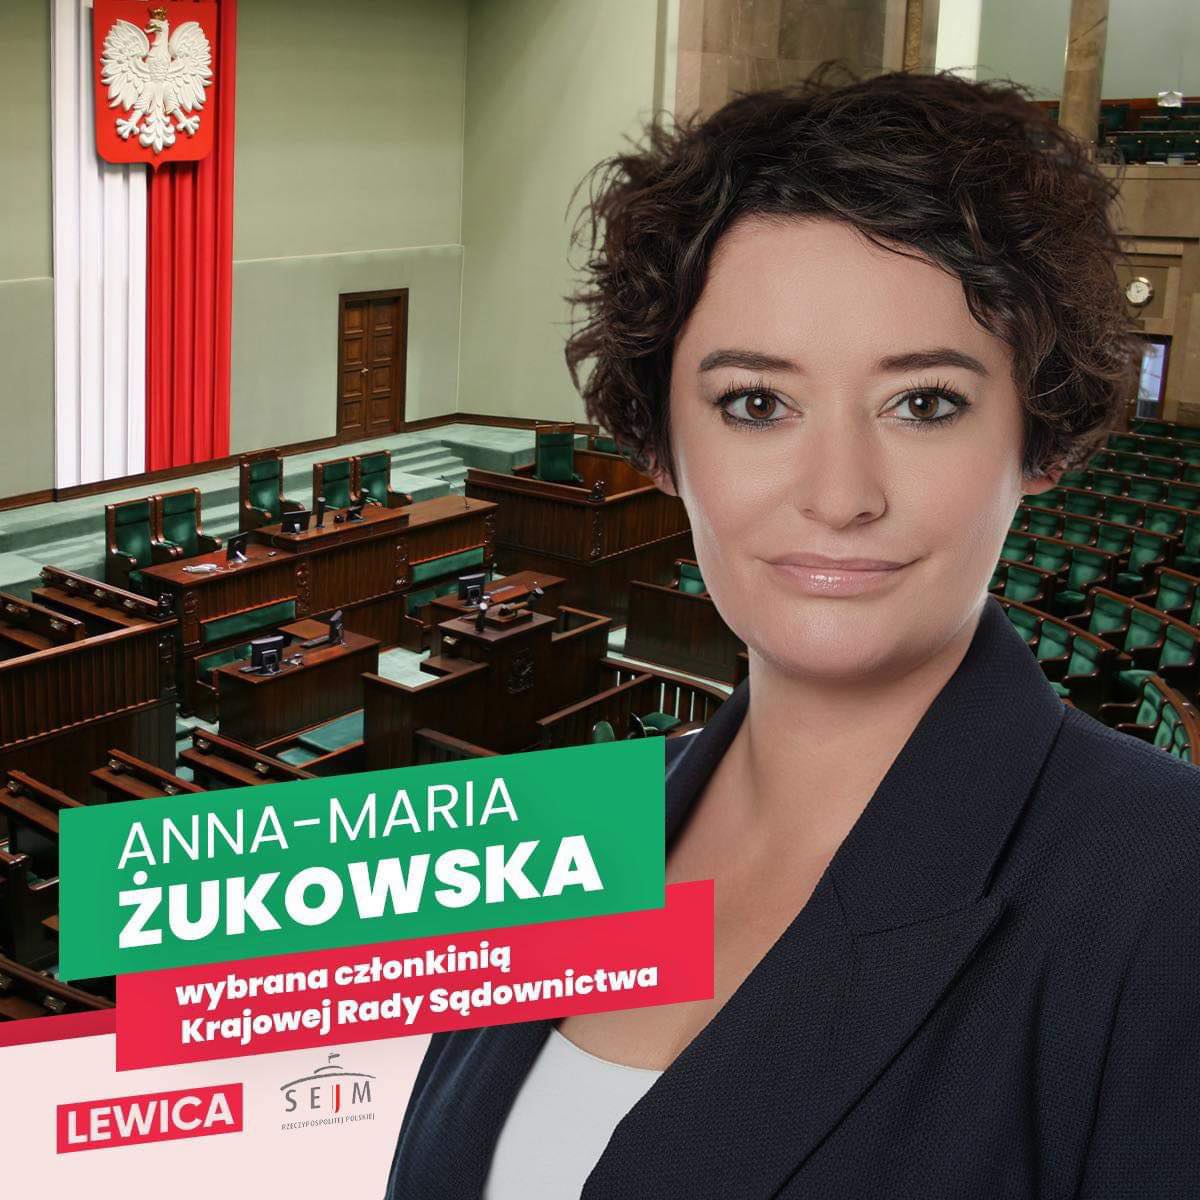 Zukowska 141123